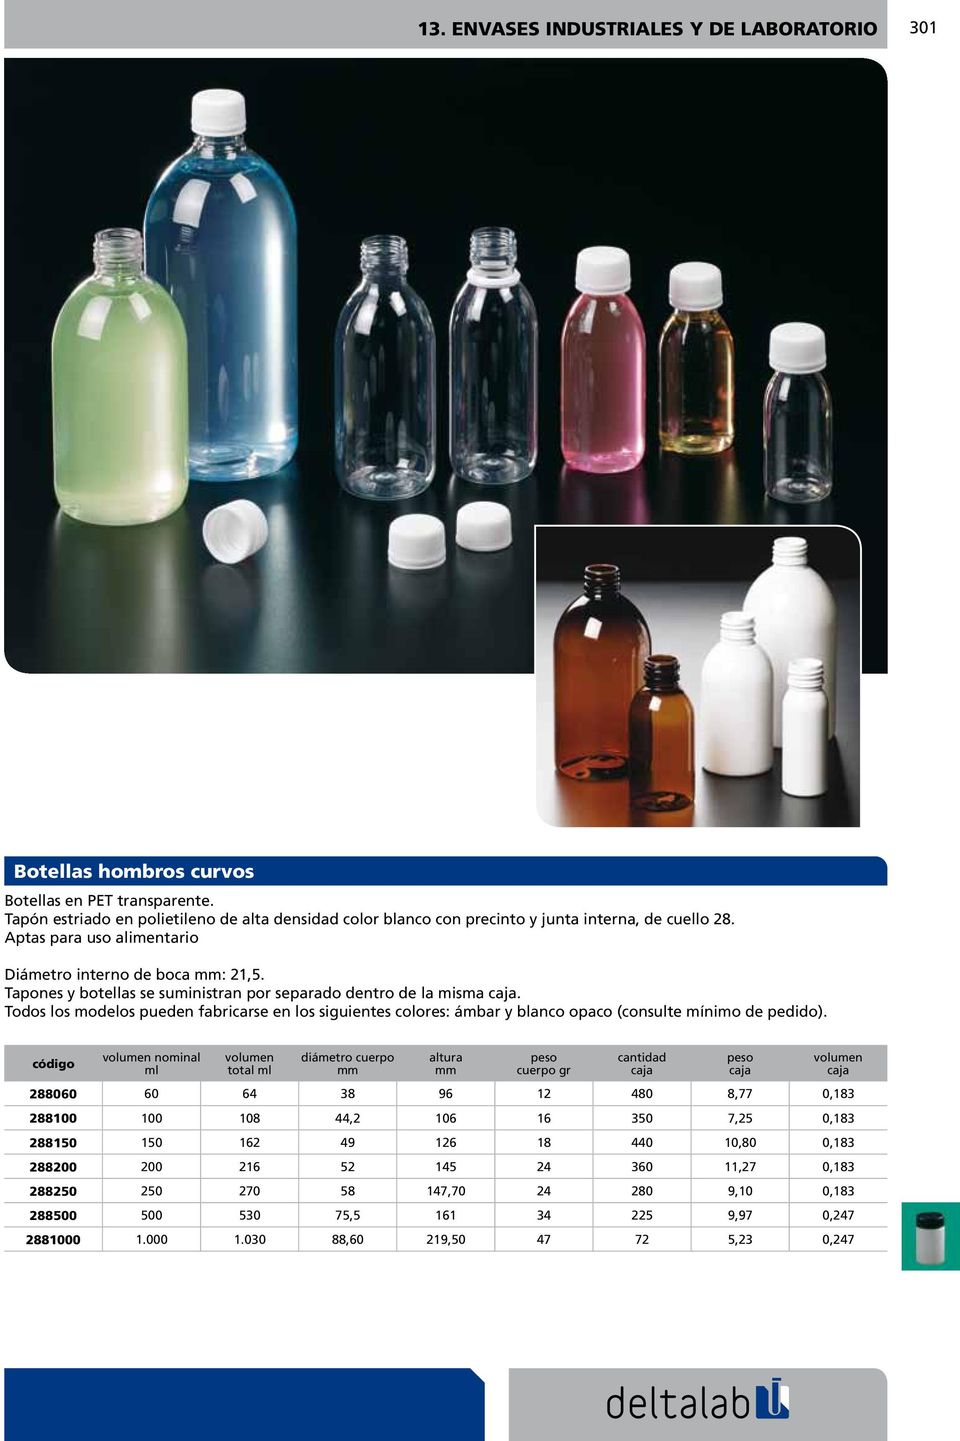 Tapones y botellas se suministran por separado dentro de la misma. Todos los modelos pueden fabricarse en los siuientes colores: ámbar y blanco opaco (consulte mínimo de pedido).